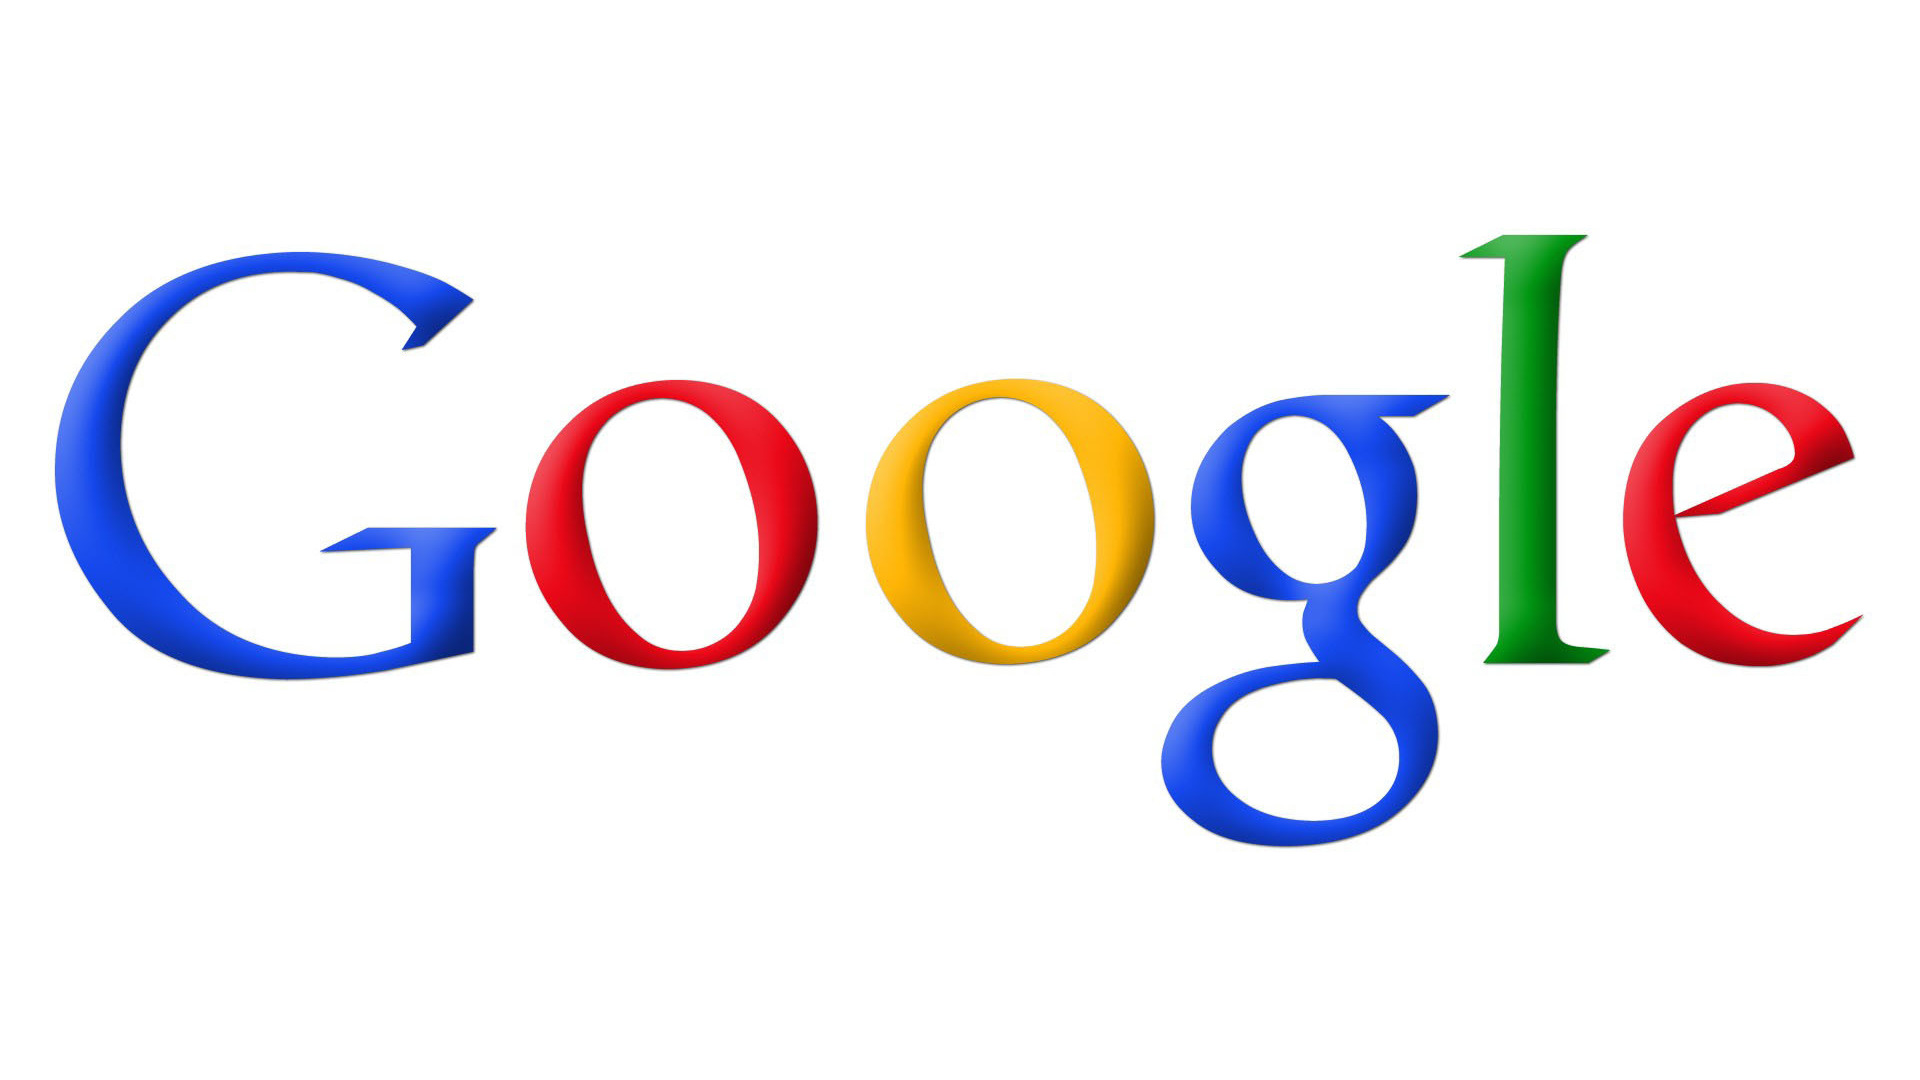 Гугл. Символ гугл. Поисковая система гугл логотип. Логотип Google на прозрачном фоне.